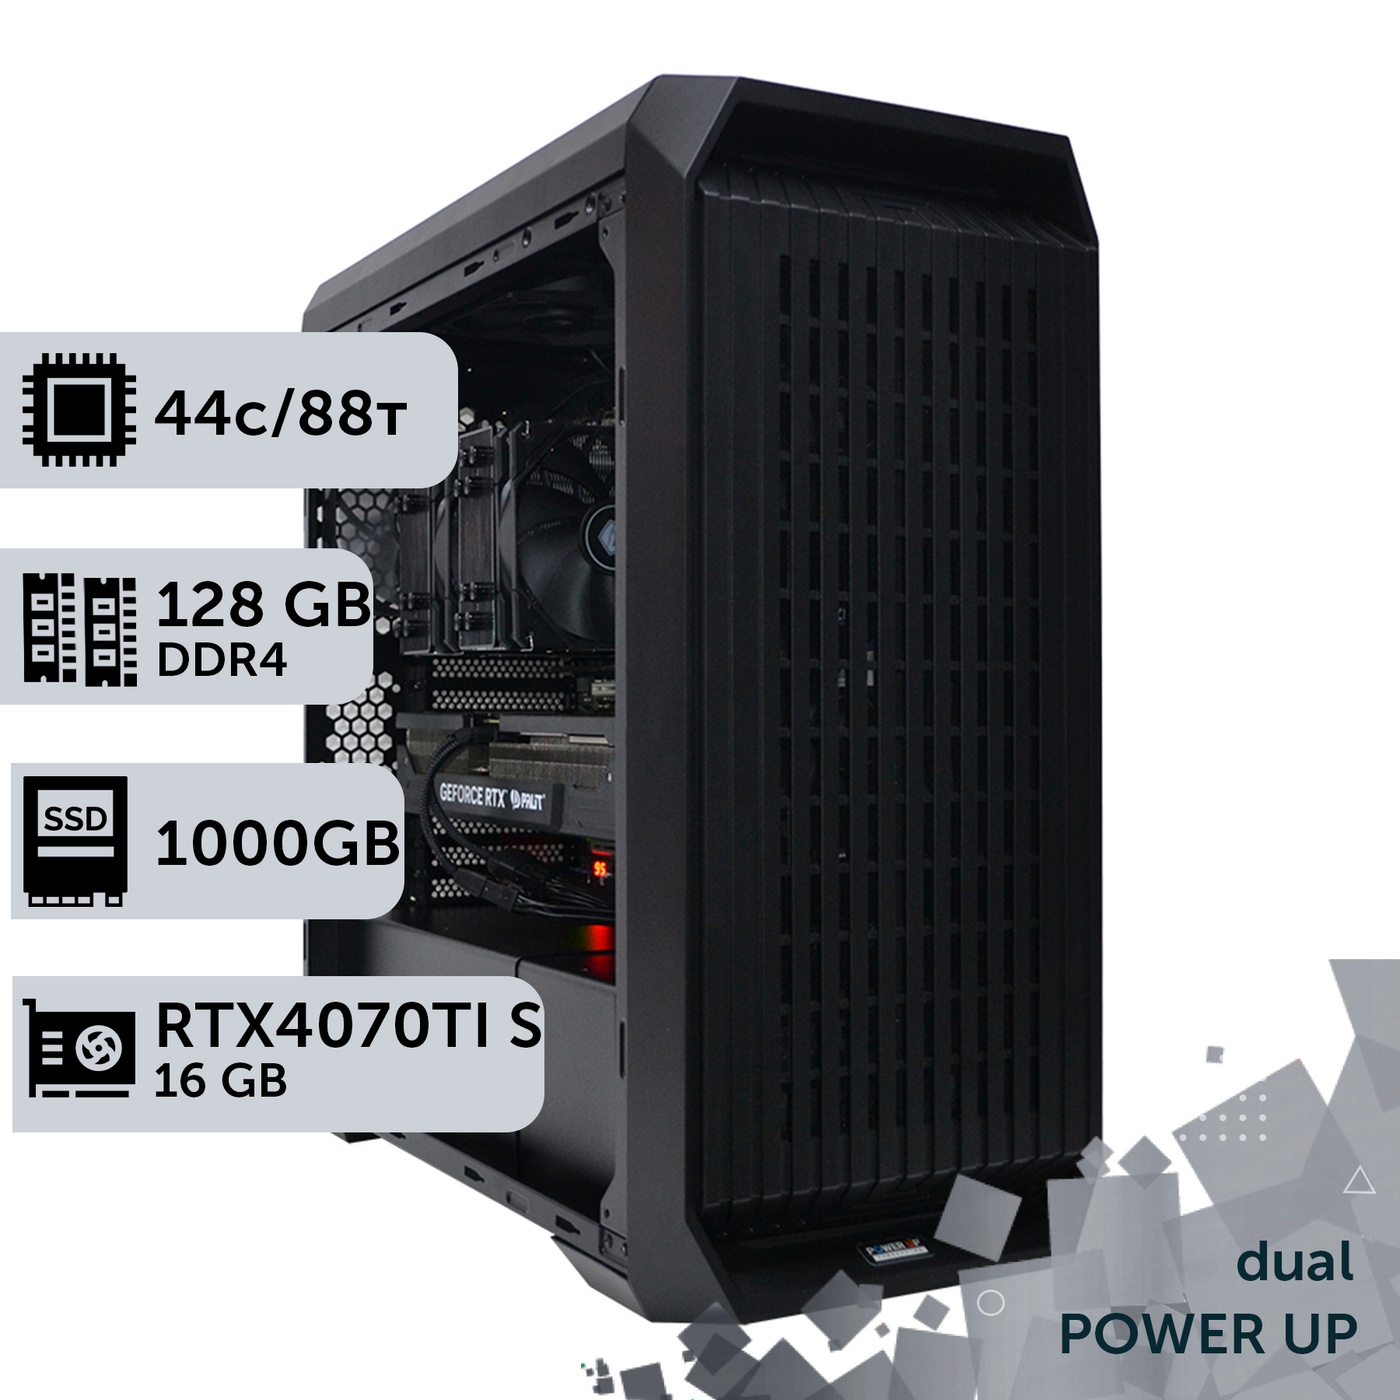 Двухпроцессорная рабочая станция PowerUp #413 Xeon E5 2699 v4 x2/128 GB/SSD 1TB/GeForce RTX 4070Ti Super 16GB